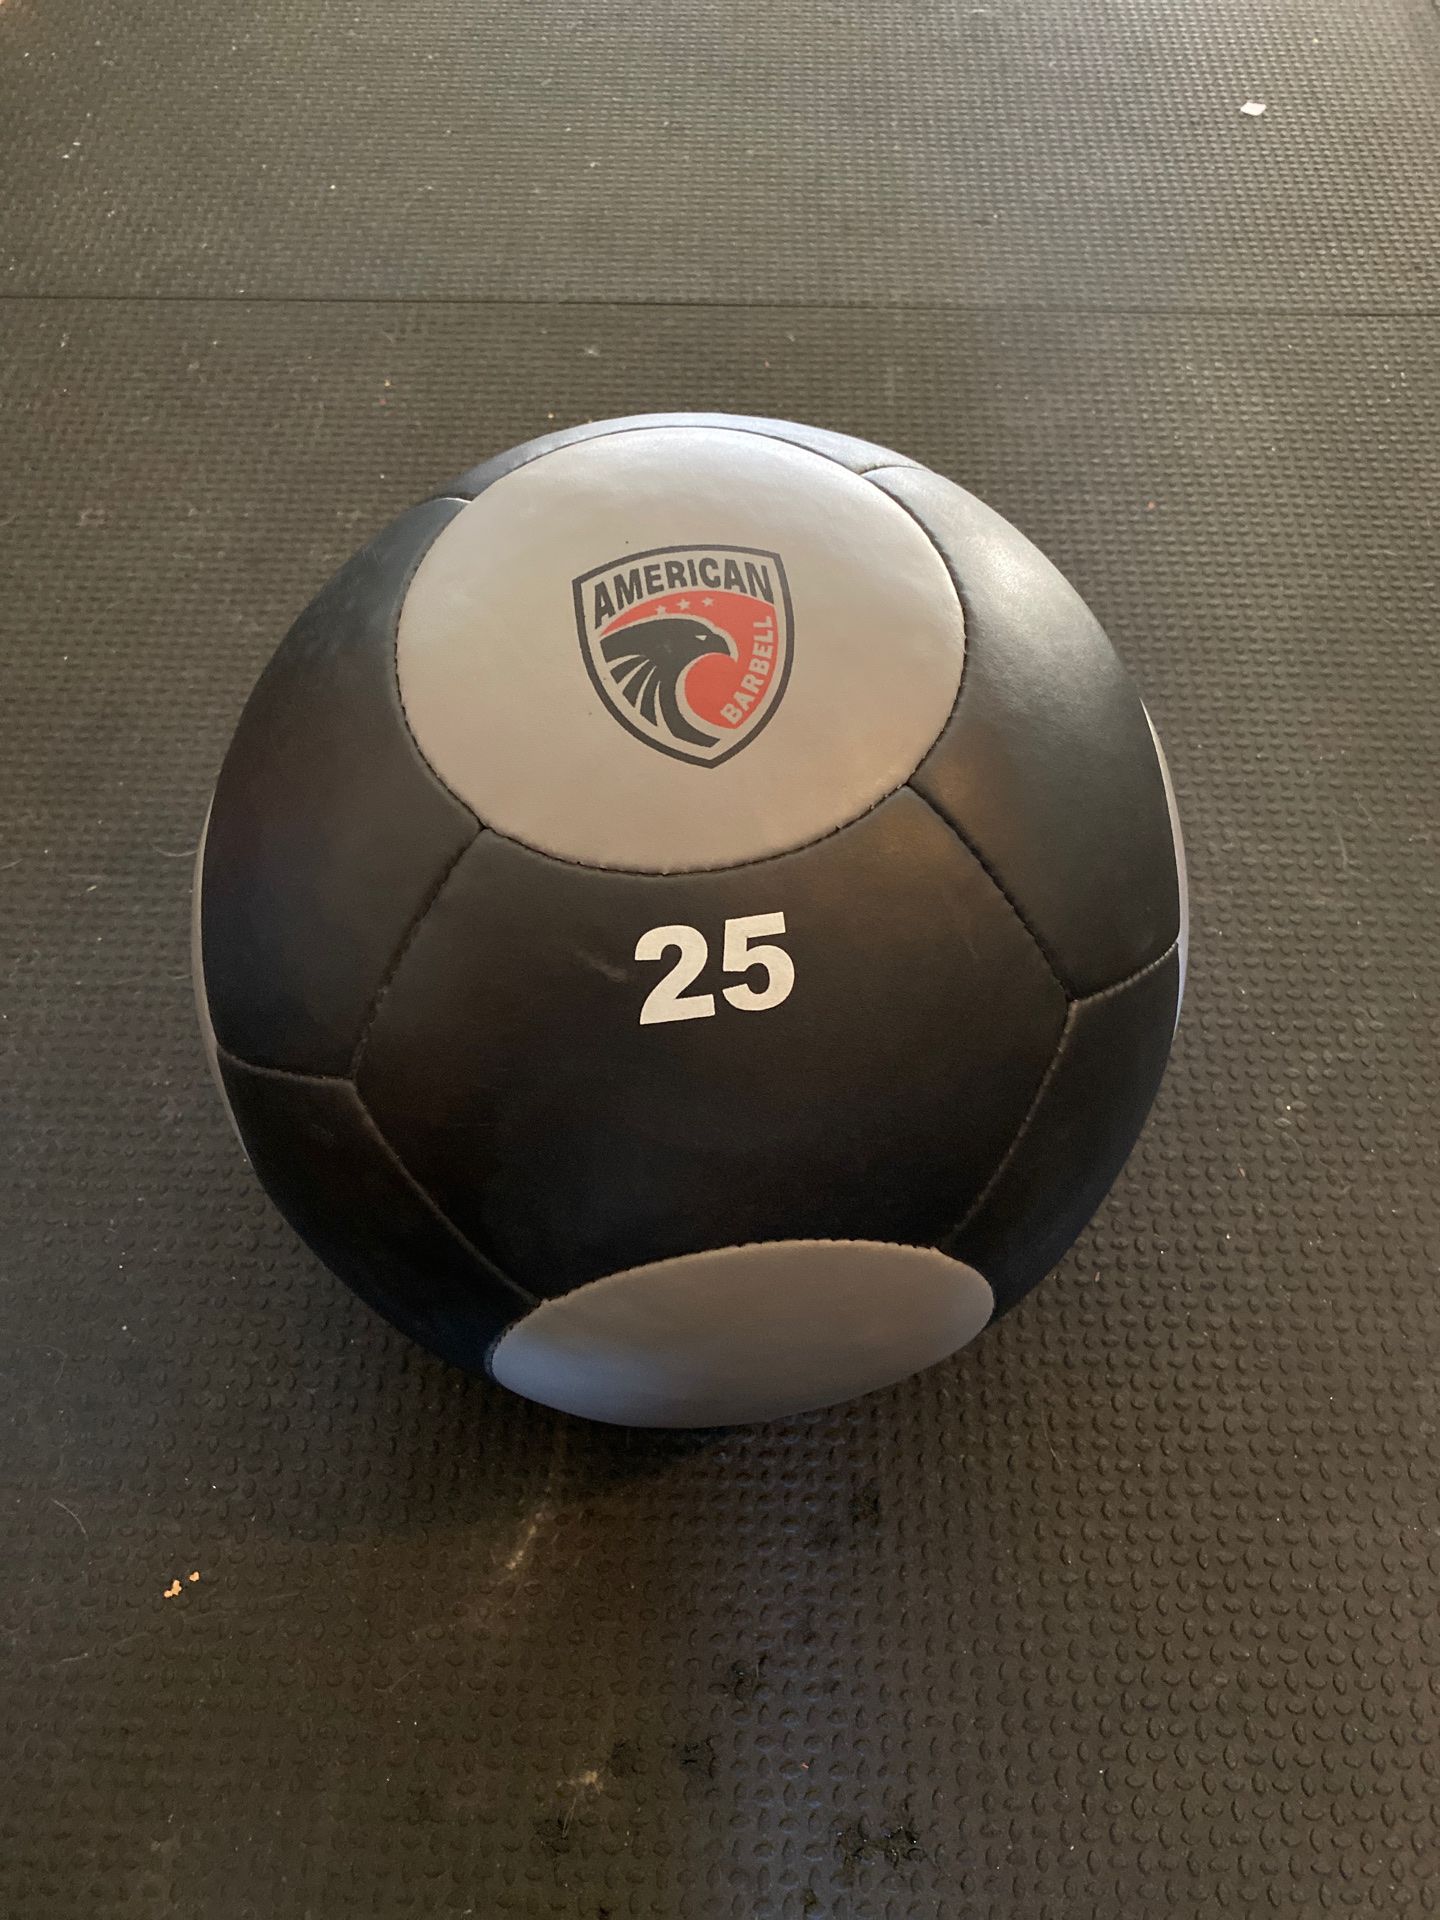 25 lb. wall ball